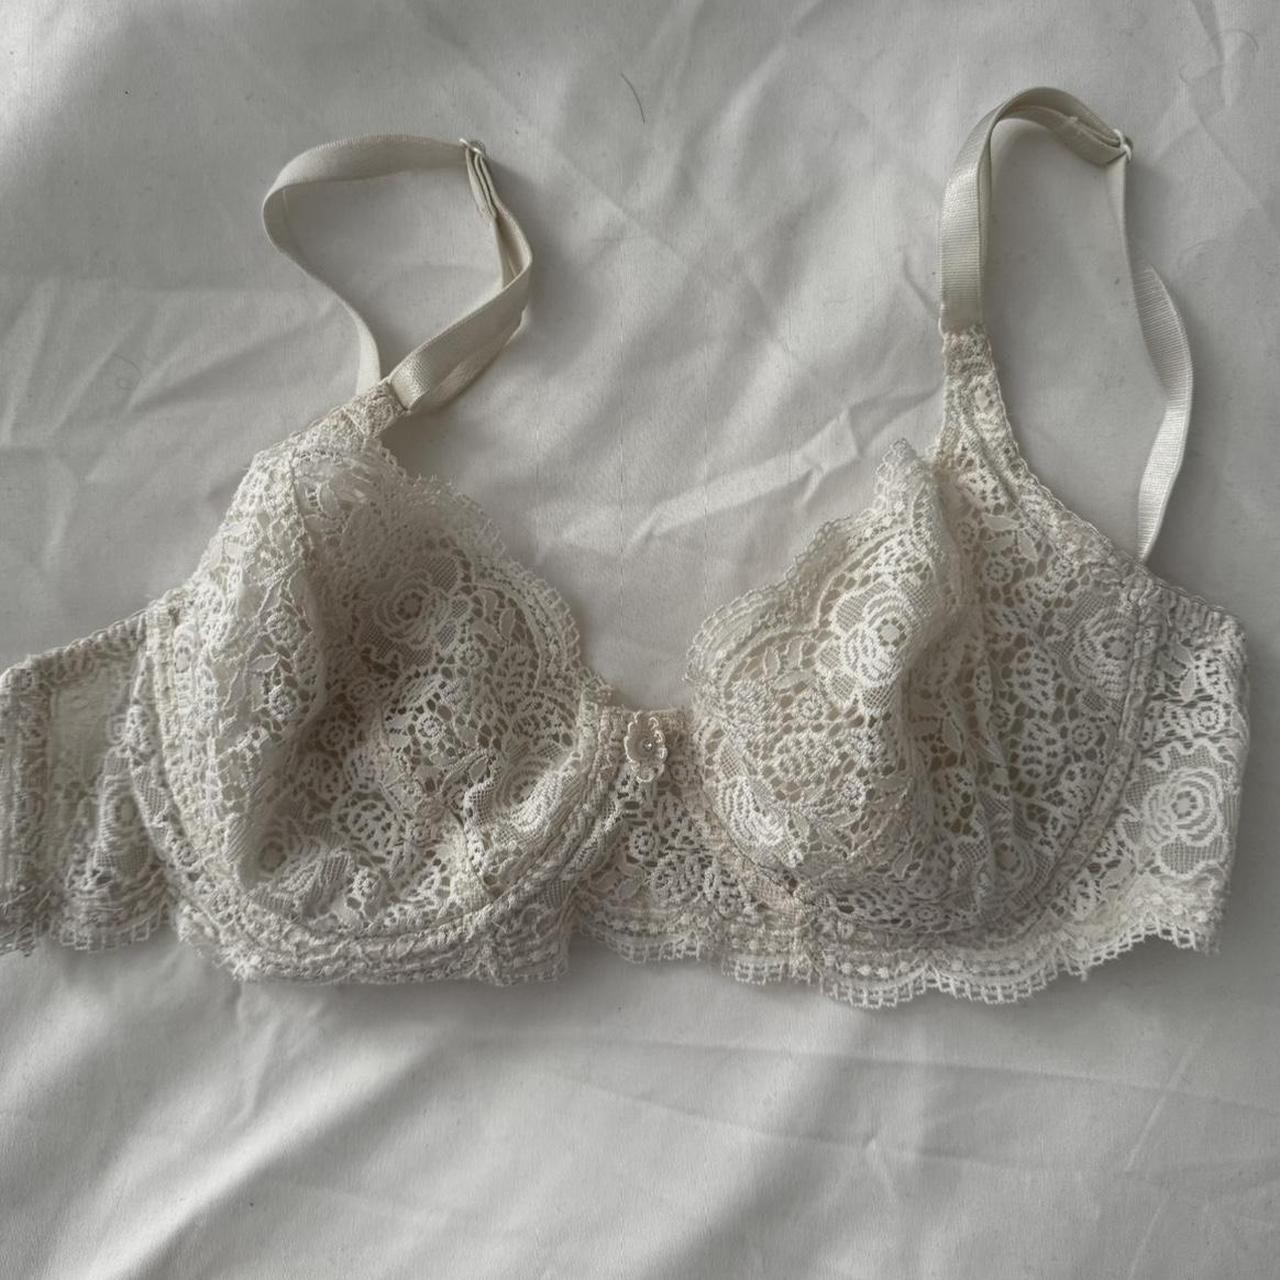 White lace unlined bra. Size 34 B - Depop